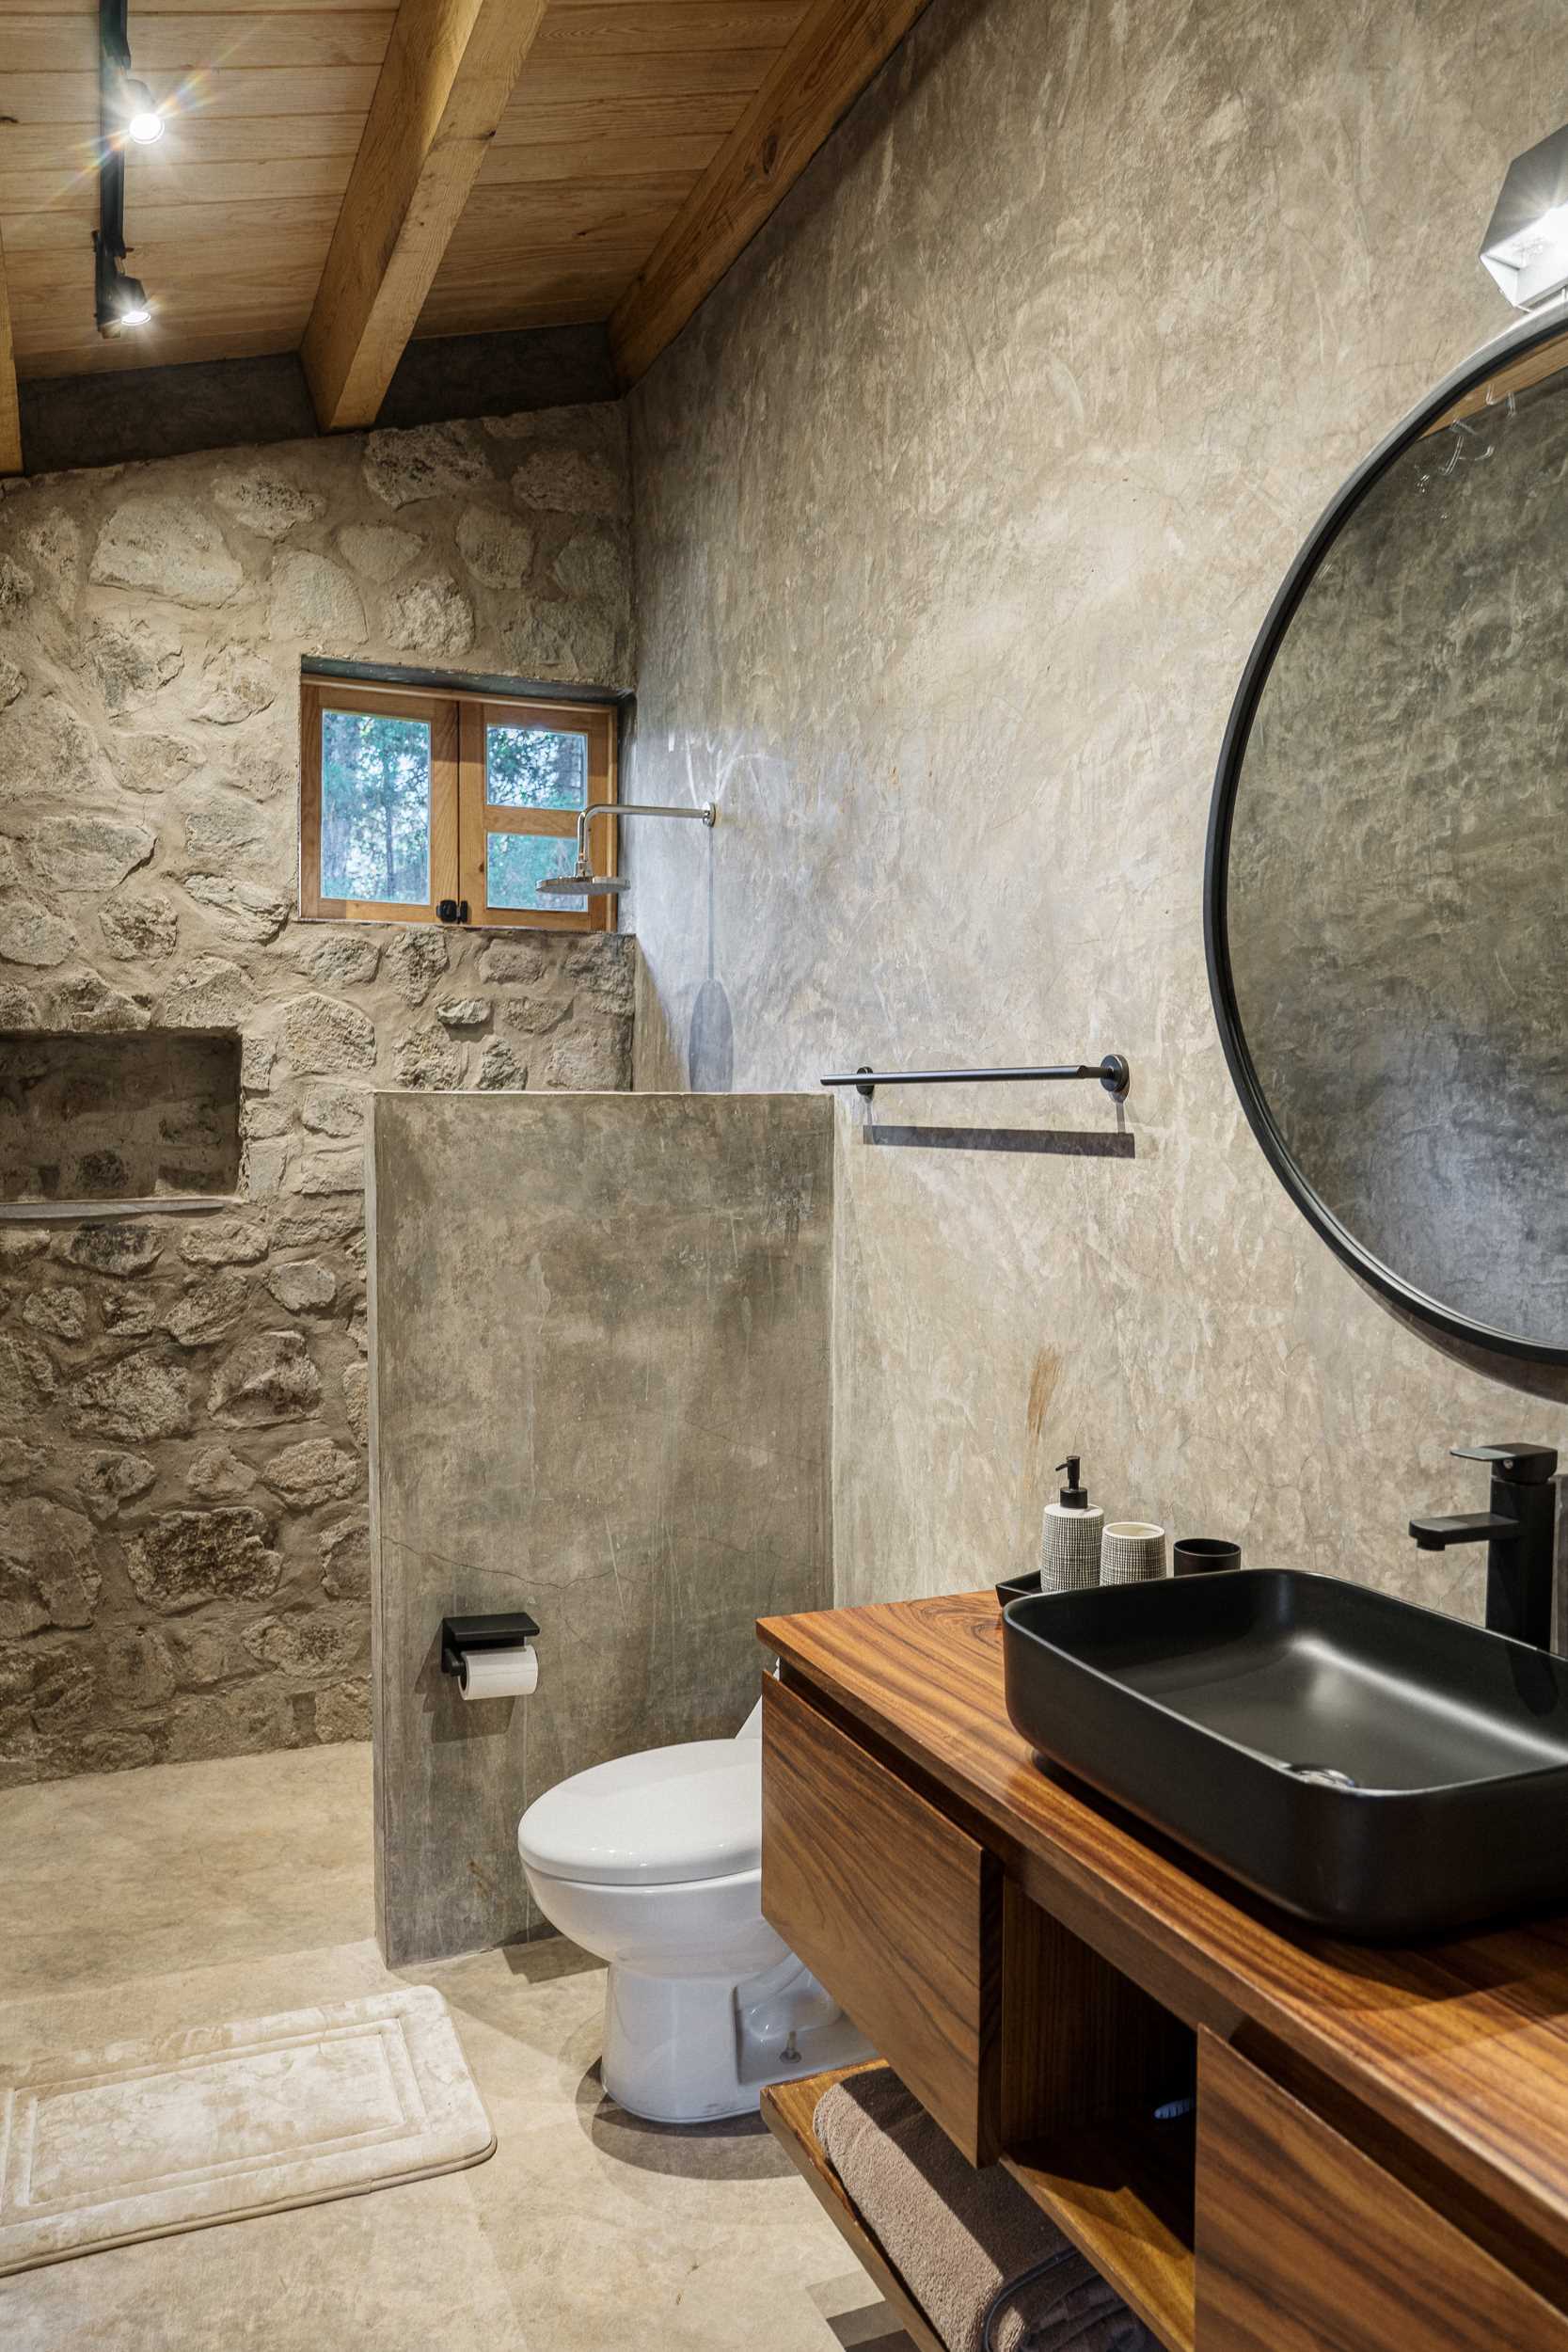 یک حمام مدرن از سنگ و چوب که شامل یک دیوار جزئی است که دوش را از بقیه فضا جدا می کند.